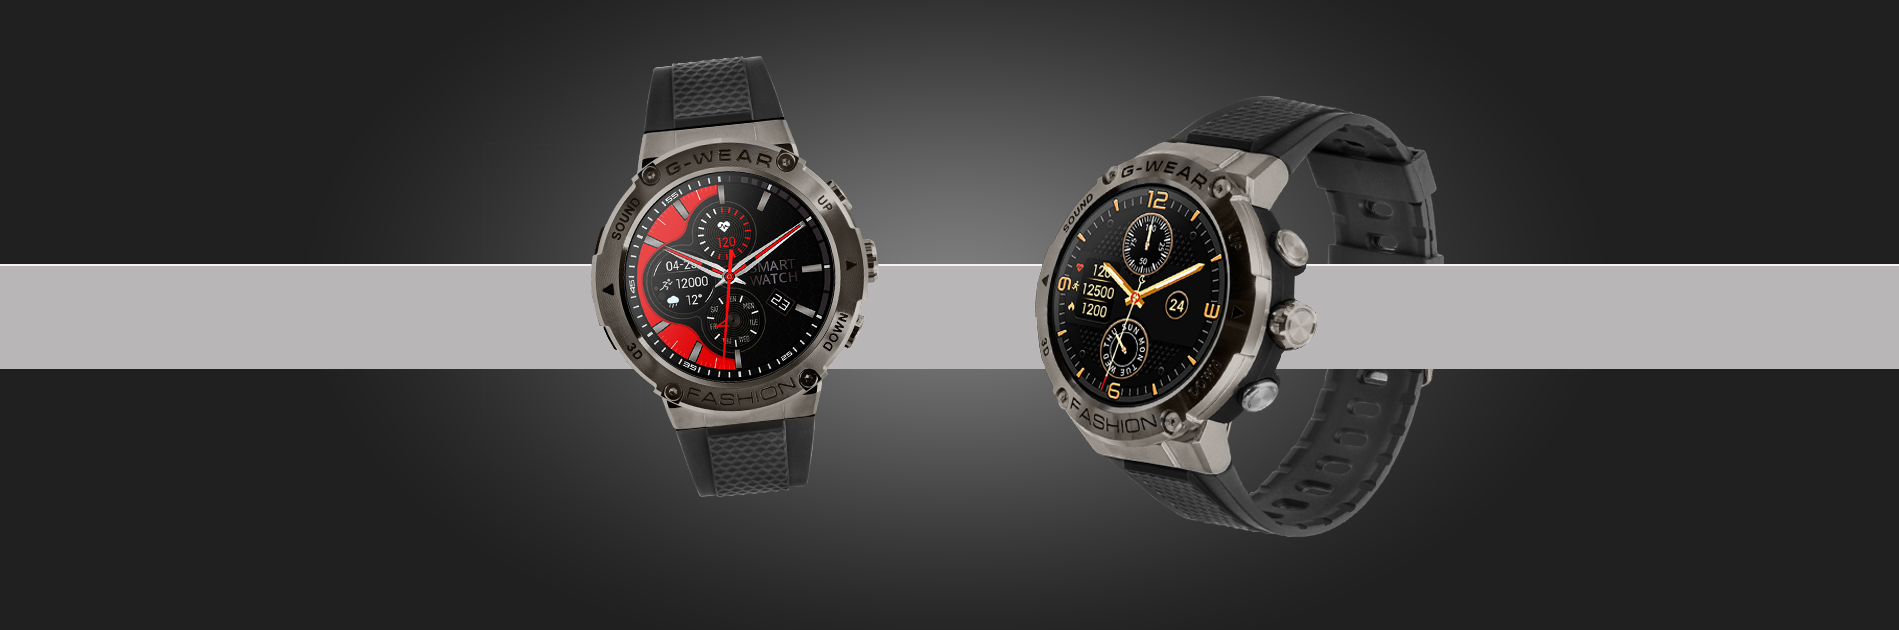 smartwatch męski watchmark g-wear